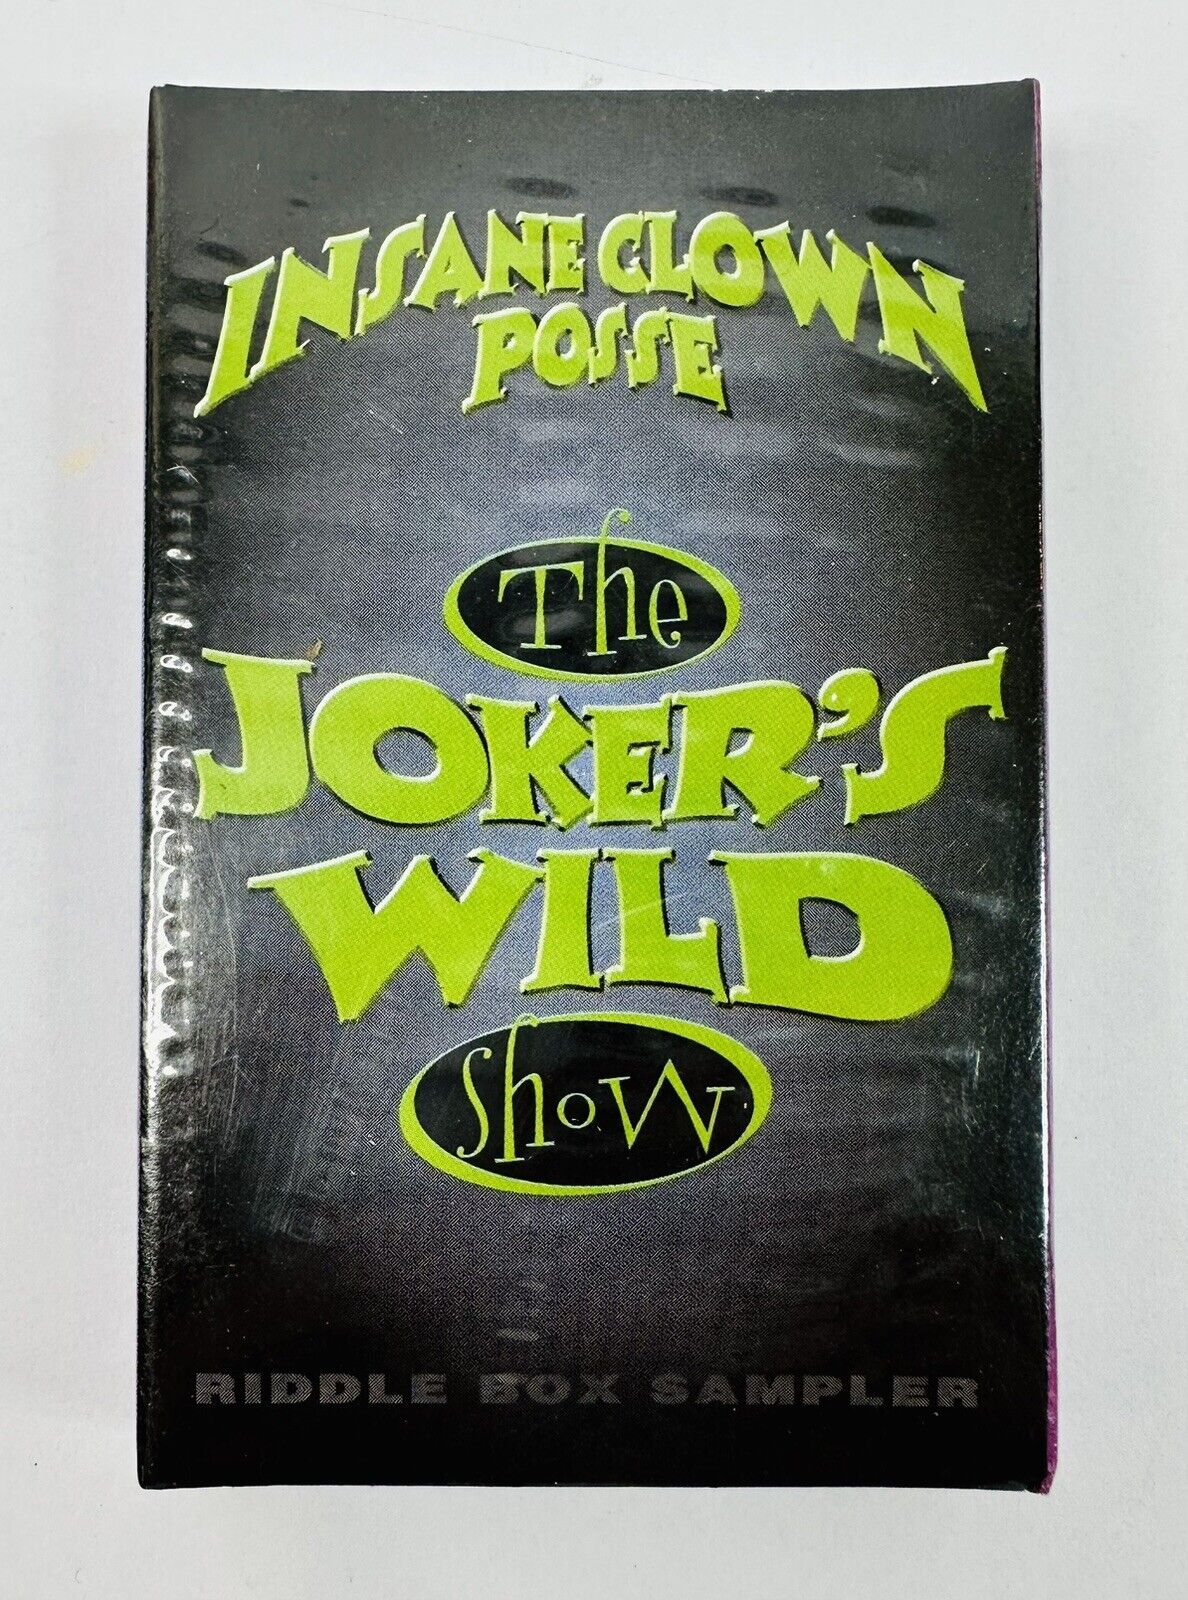 Vintage 1995 Insane Clown Posse ICP The Joker’s Wild Show Riddle Box Sampler NEW